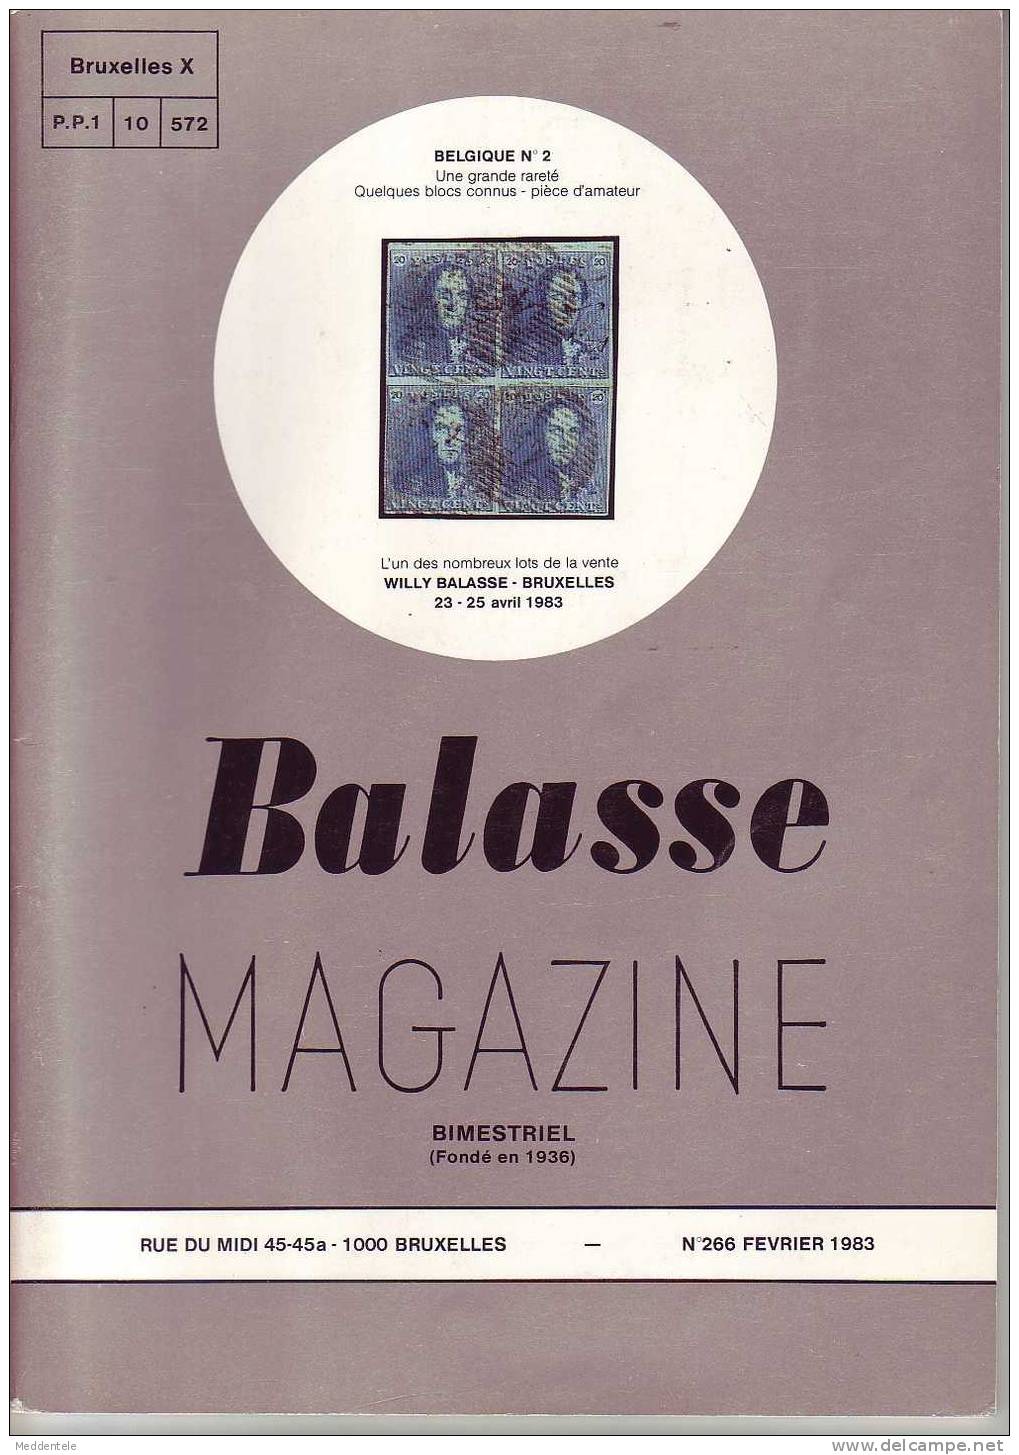 BALASSE MAGAZINE N° 266 - Français (àpd. 1941)